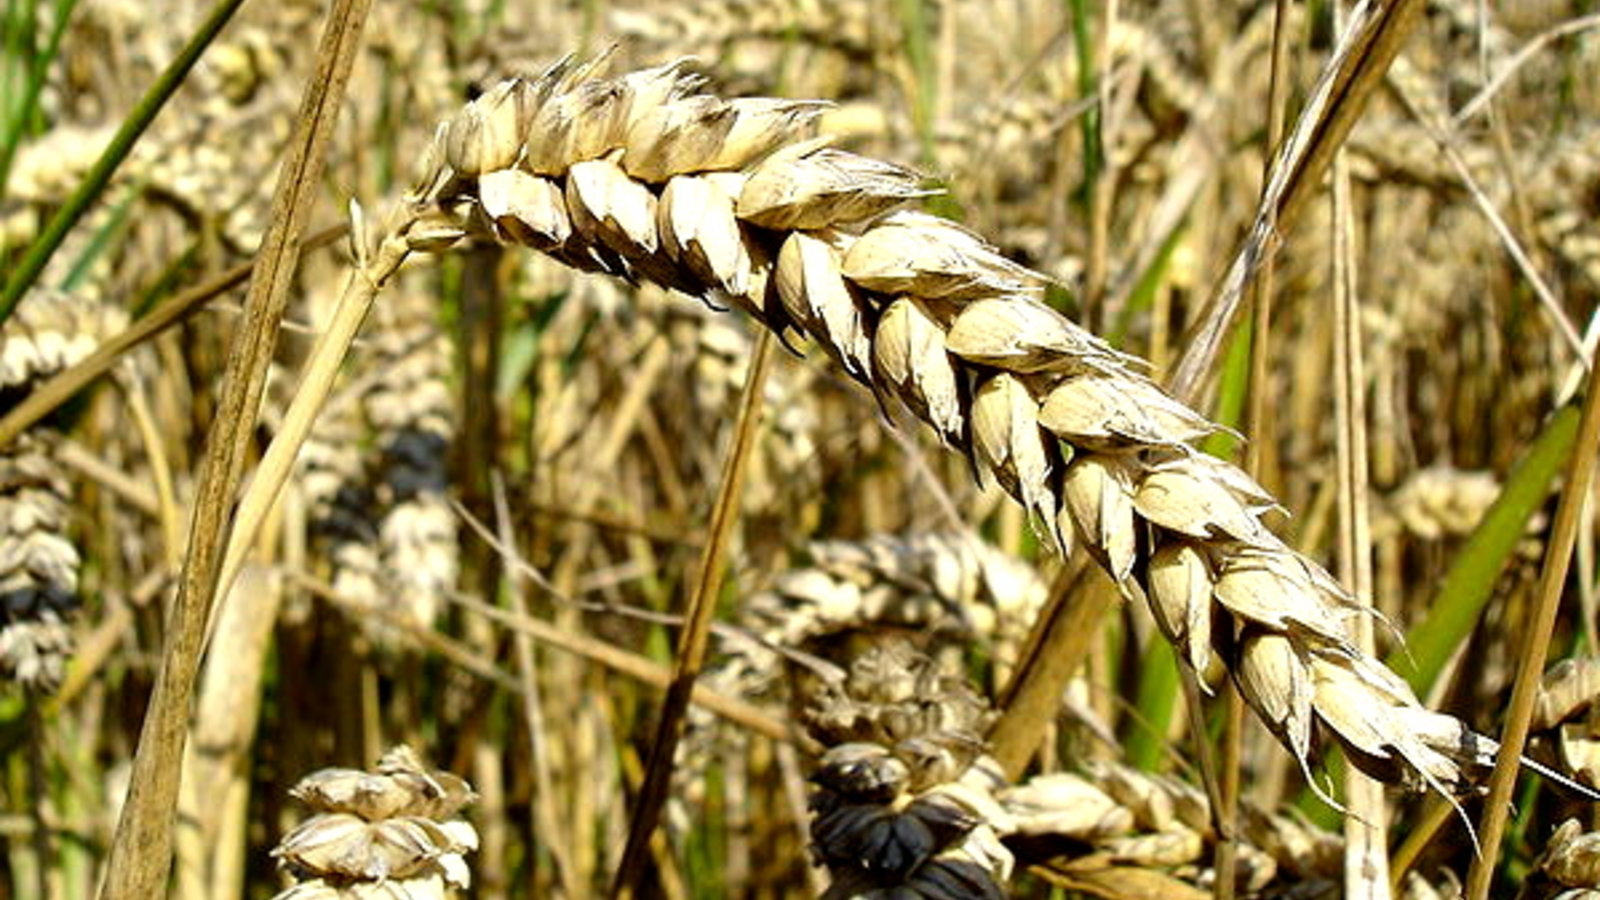 800px-Wheat_close-up.JPG